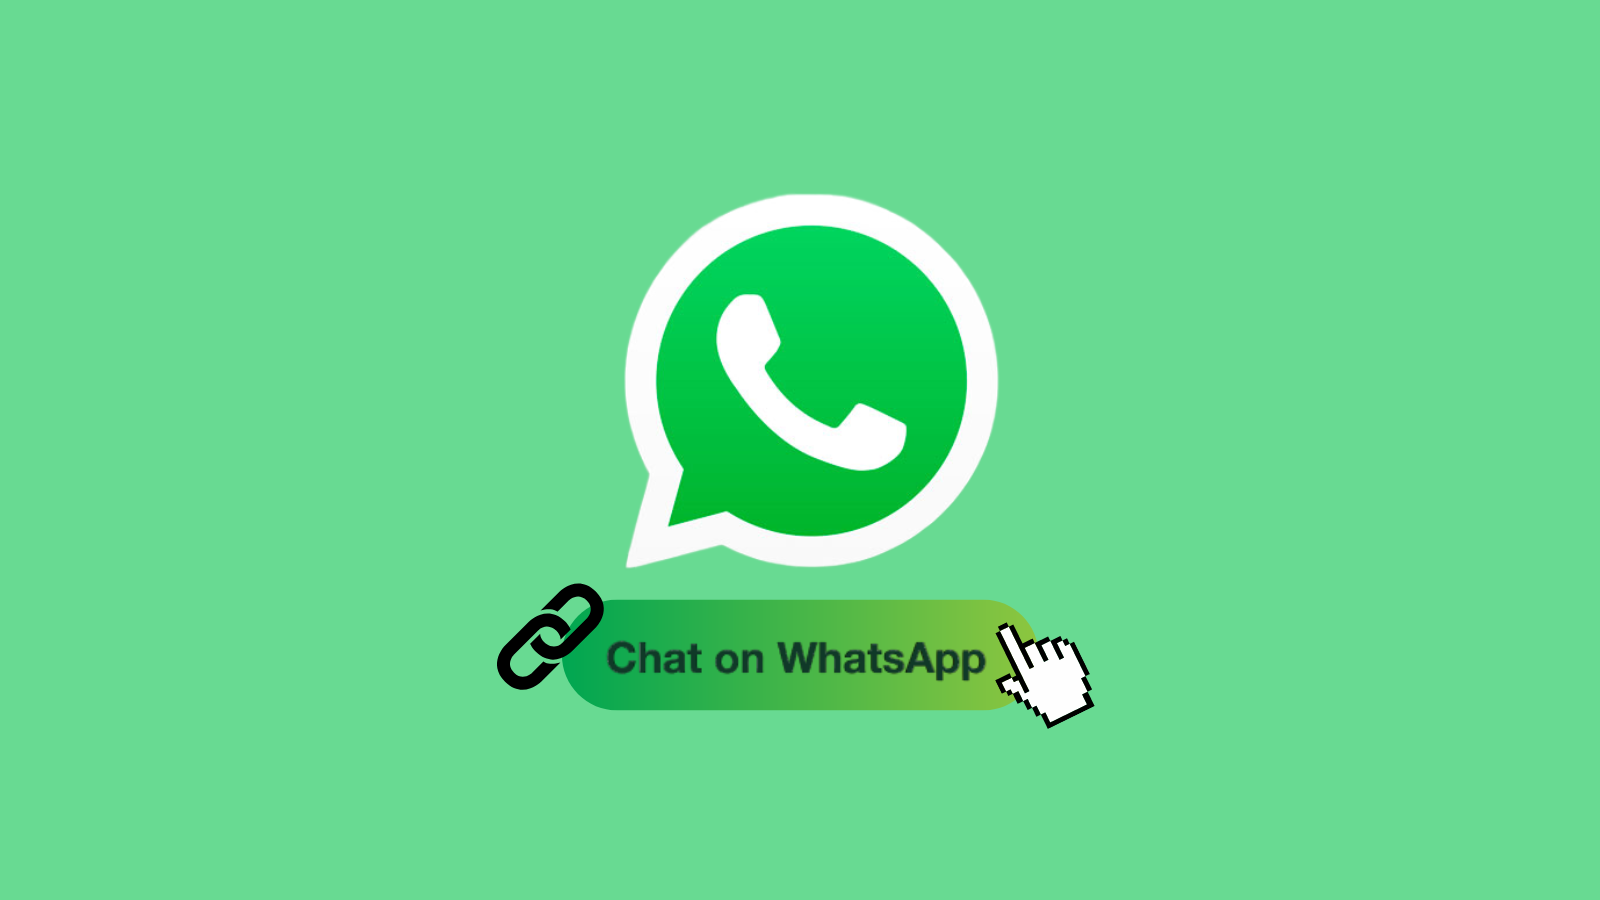 Como criar links para números de telefone no whatsapp. Saiba como gerar links para números de telefone no whatsapp e facilitar a comunicação direta com apenas um clique